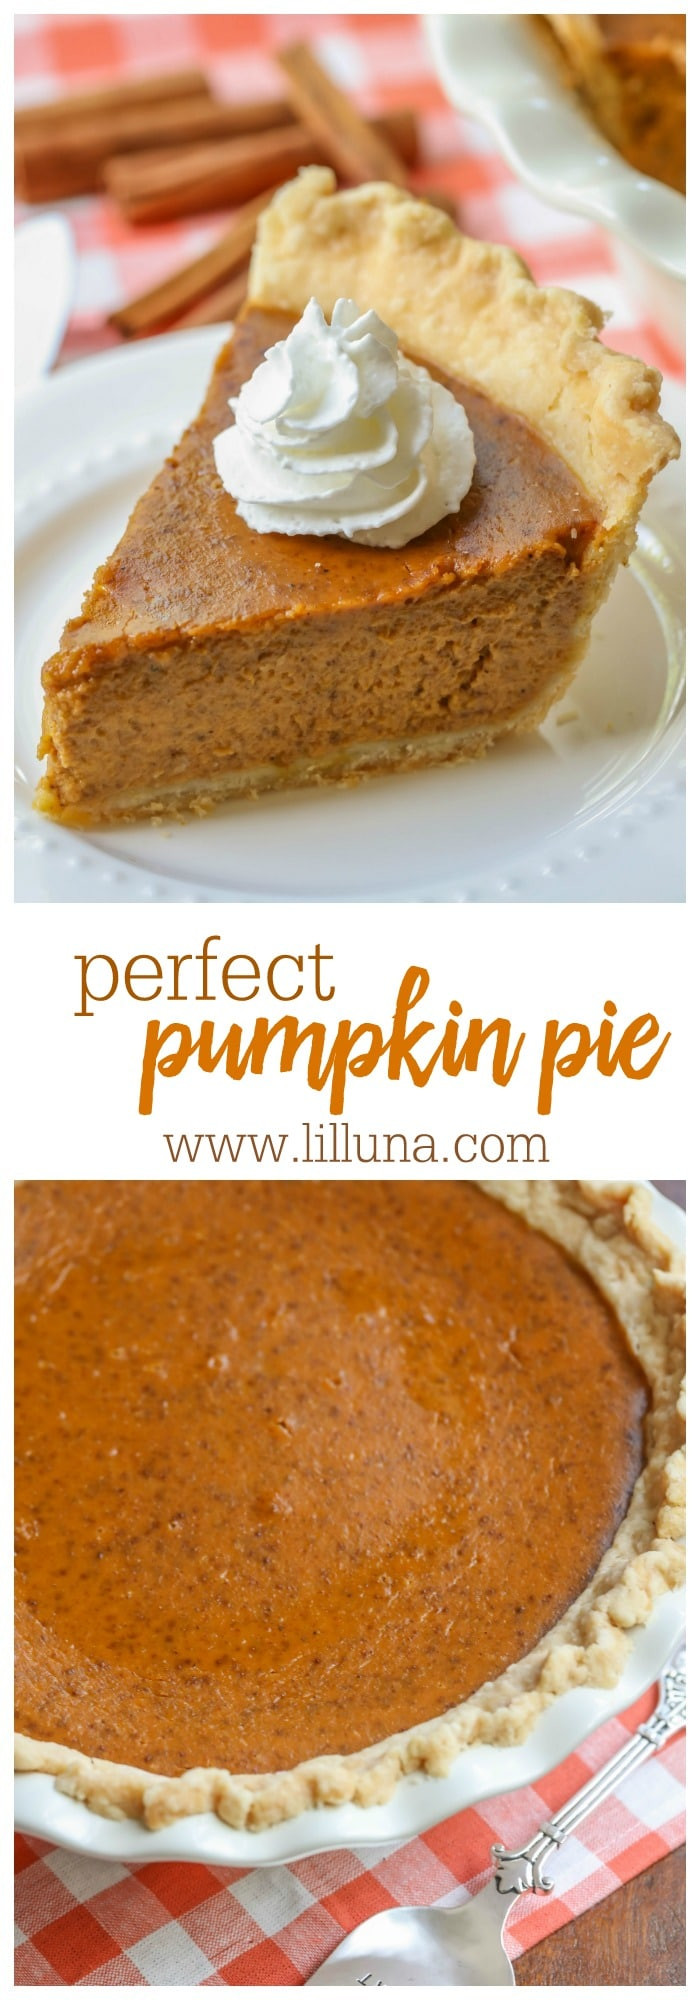 Pumpkin Pie Easy Recipes
 EASY Homemade Pumpkin Pie Recipe